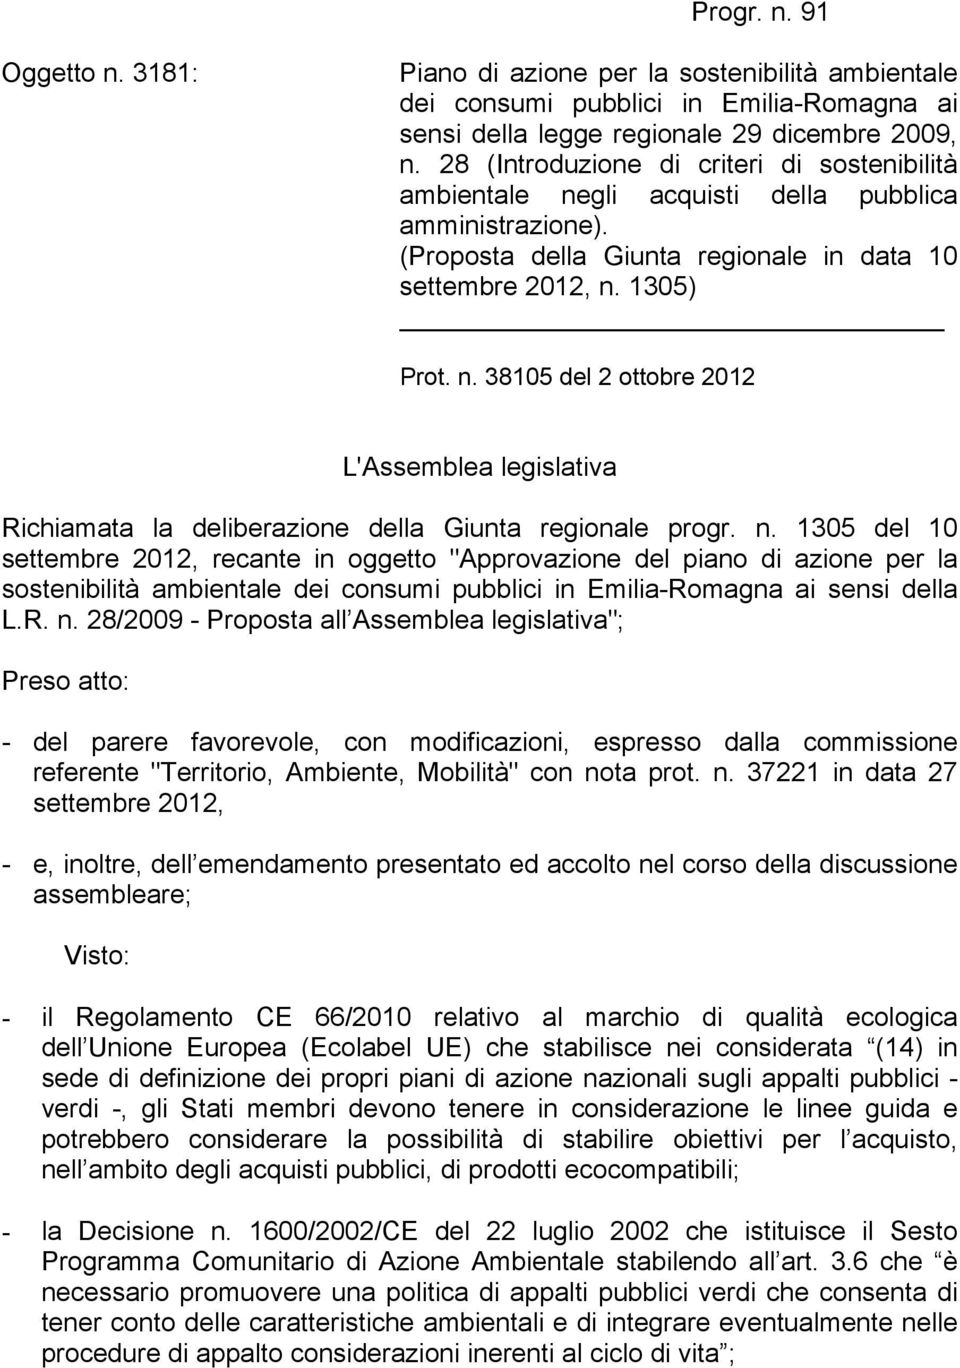 n. 1305 del 10 settembre 2012, recante in oggetto "Approvazione del piano di azione per la sostenibilità ambientale dei consumi pubblici in Emilia-Romagna ai sensi della L.R. n.